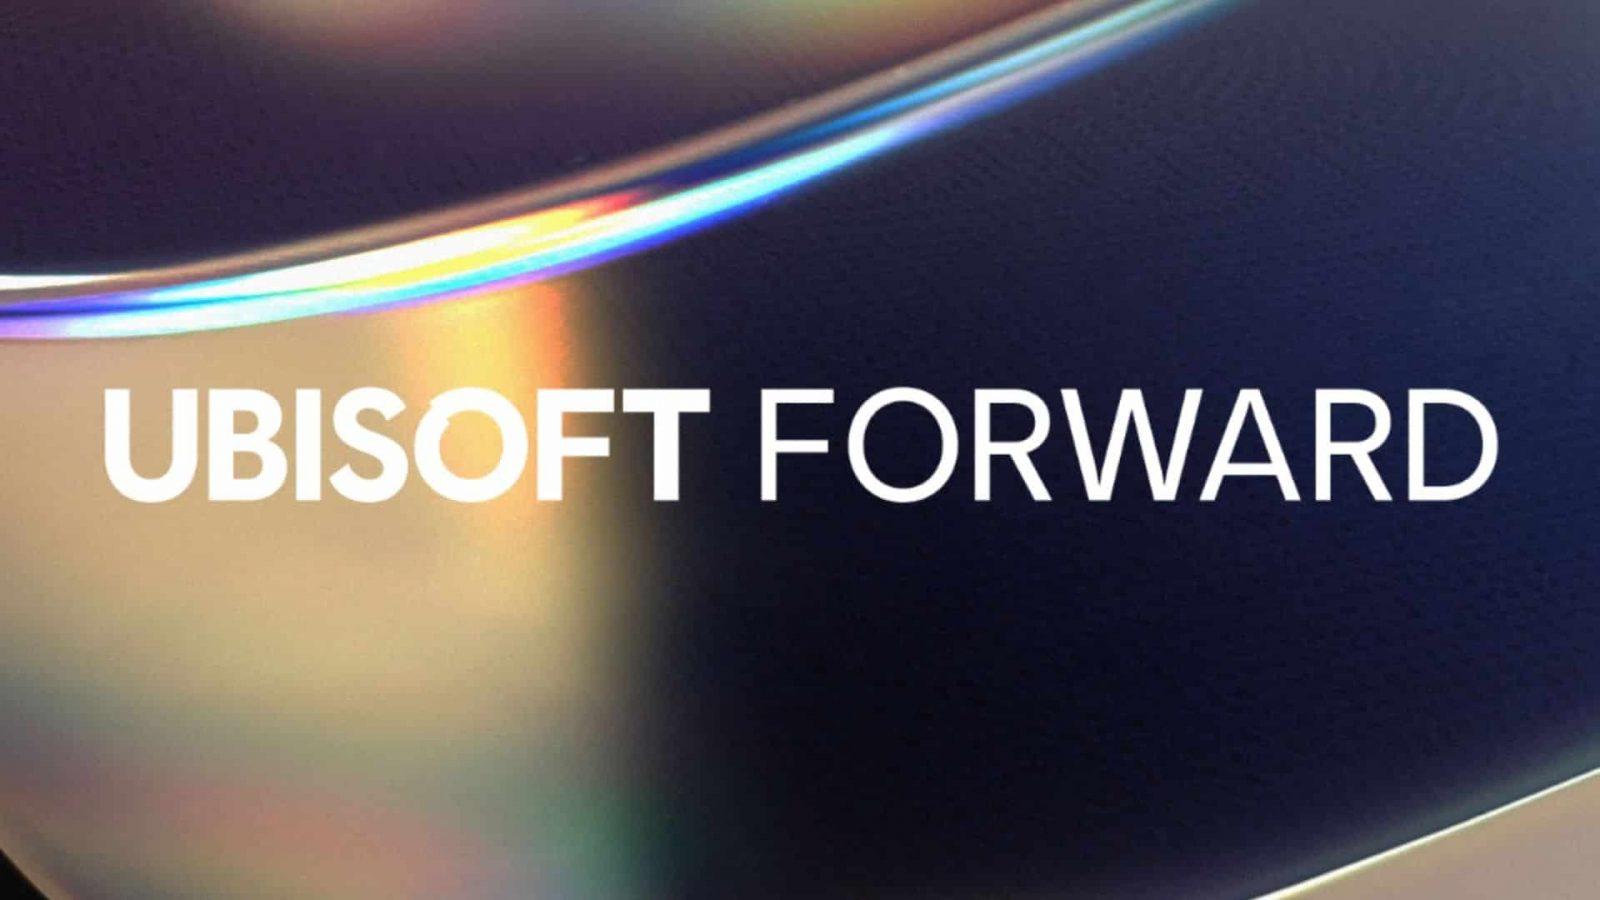 ubisoft forward 2022 logo